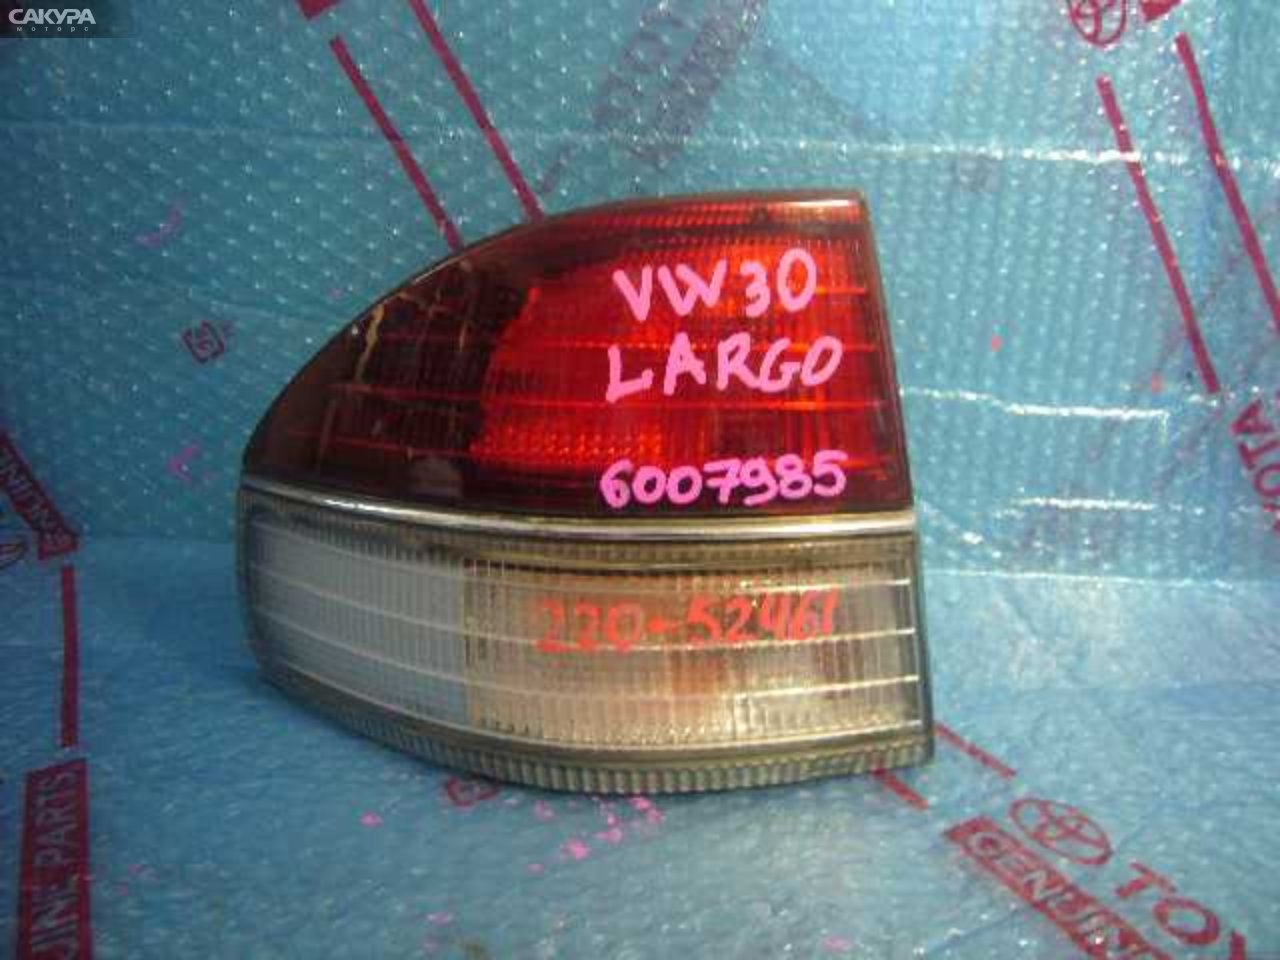 Фонарь стоп-сигнала левый Nissan Largo W30 220-52461: купить в Сакура Кемерово.